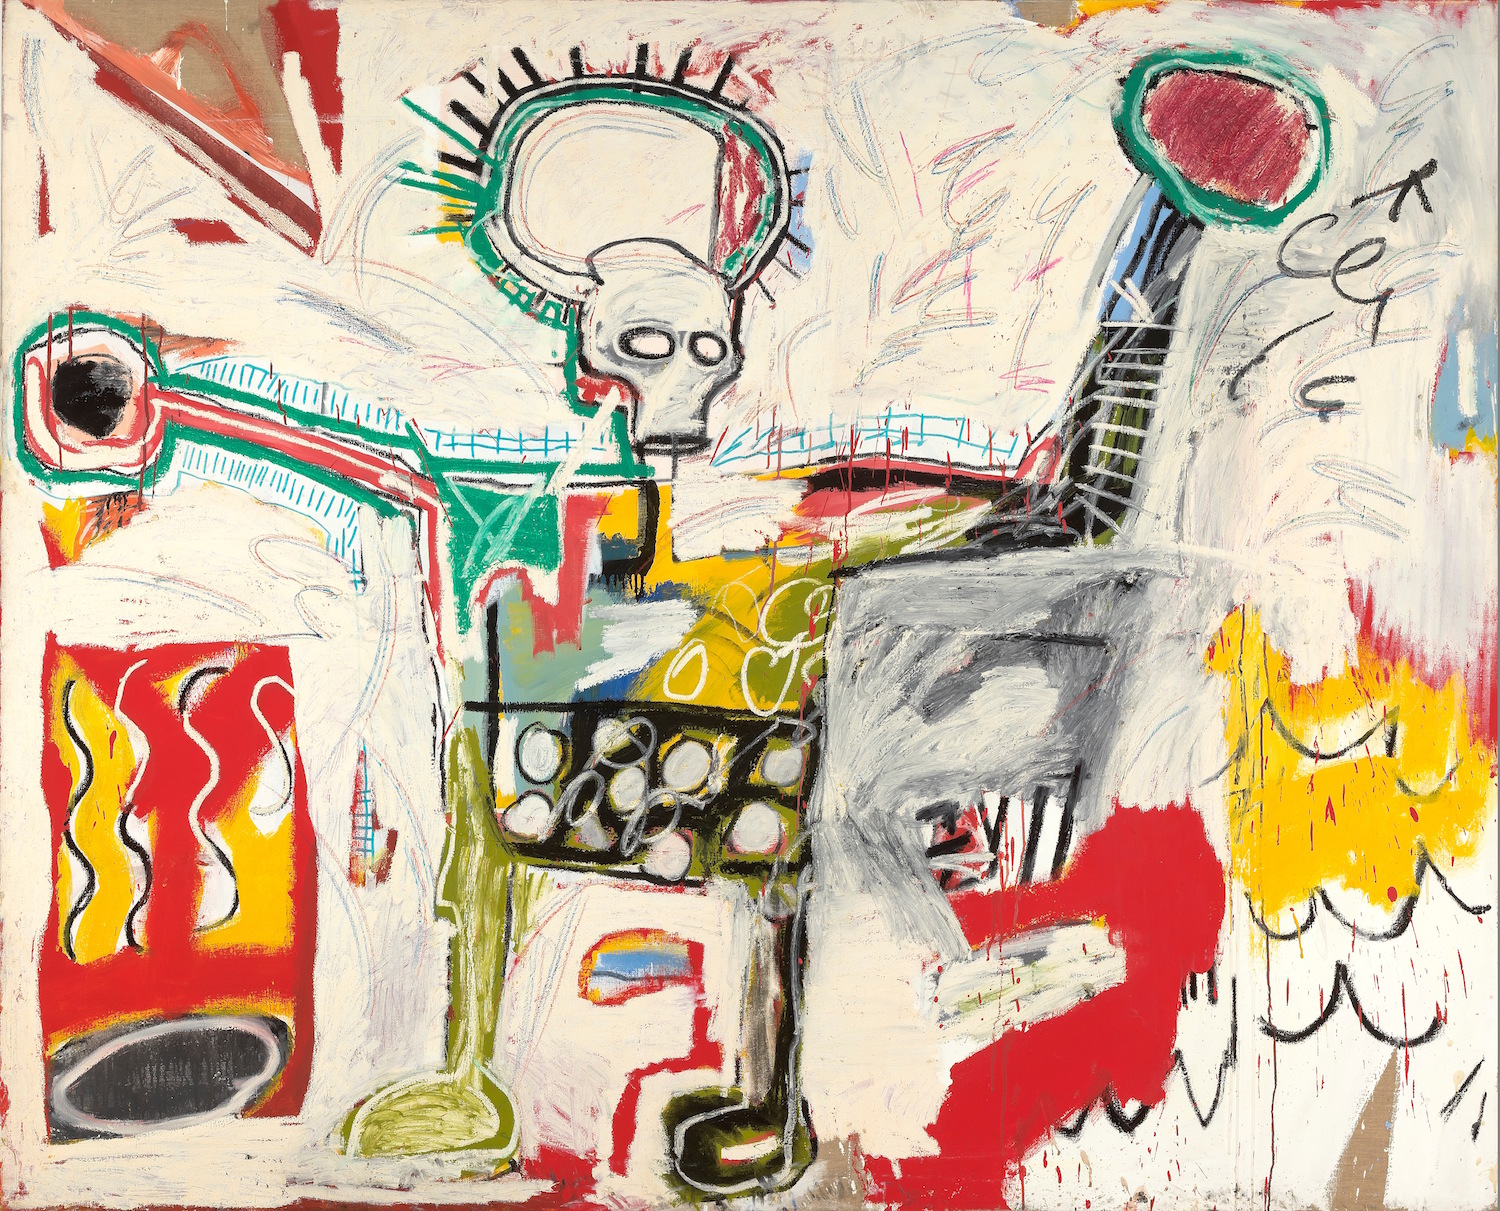 Jean-Michel Basquiat, Untitled 1982, Museum Boijmans Van Beuningen, Studio Tromp, Rotterdam